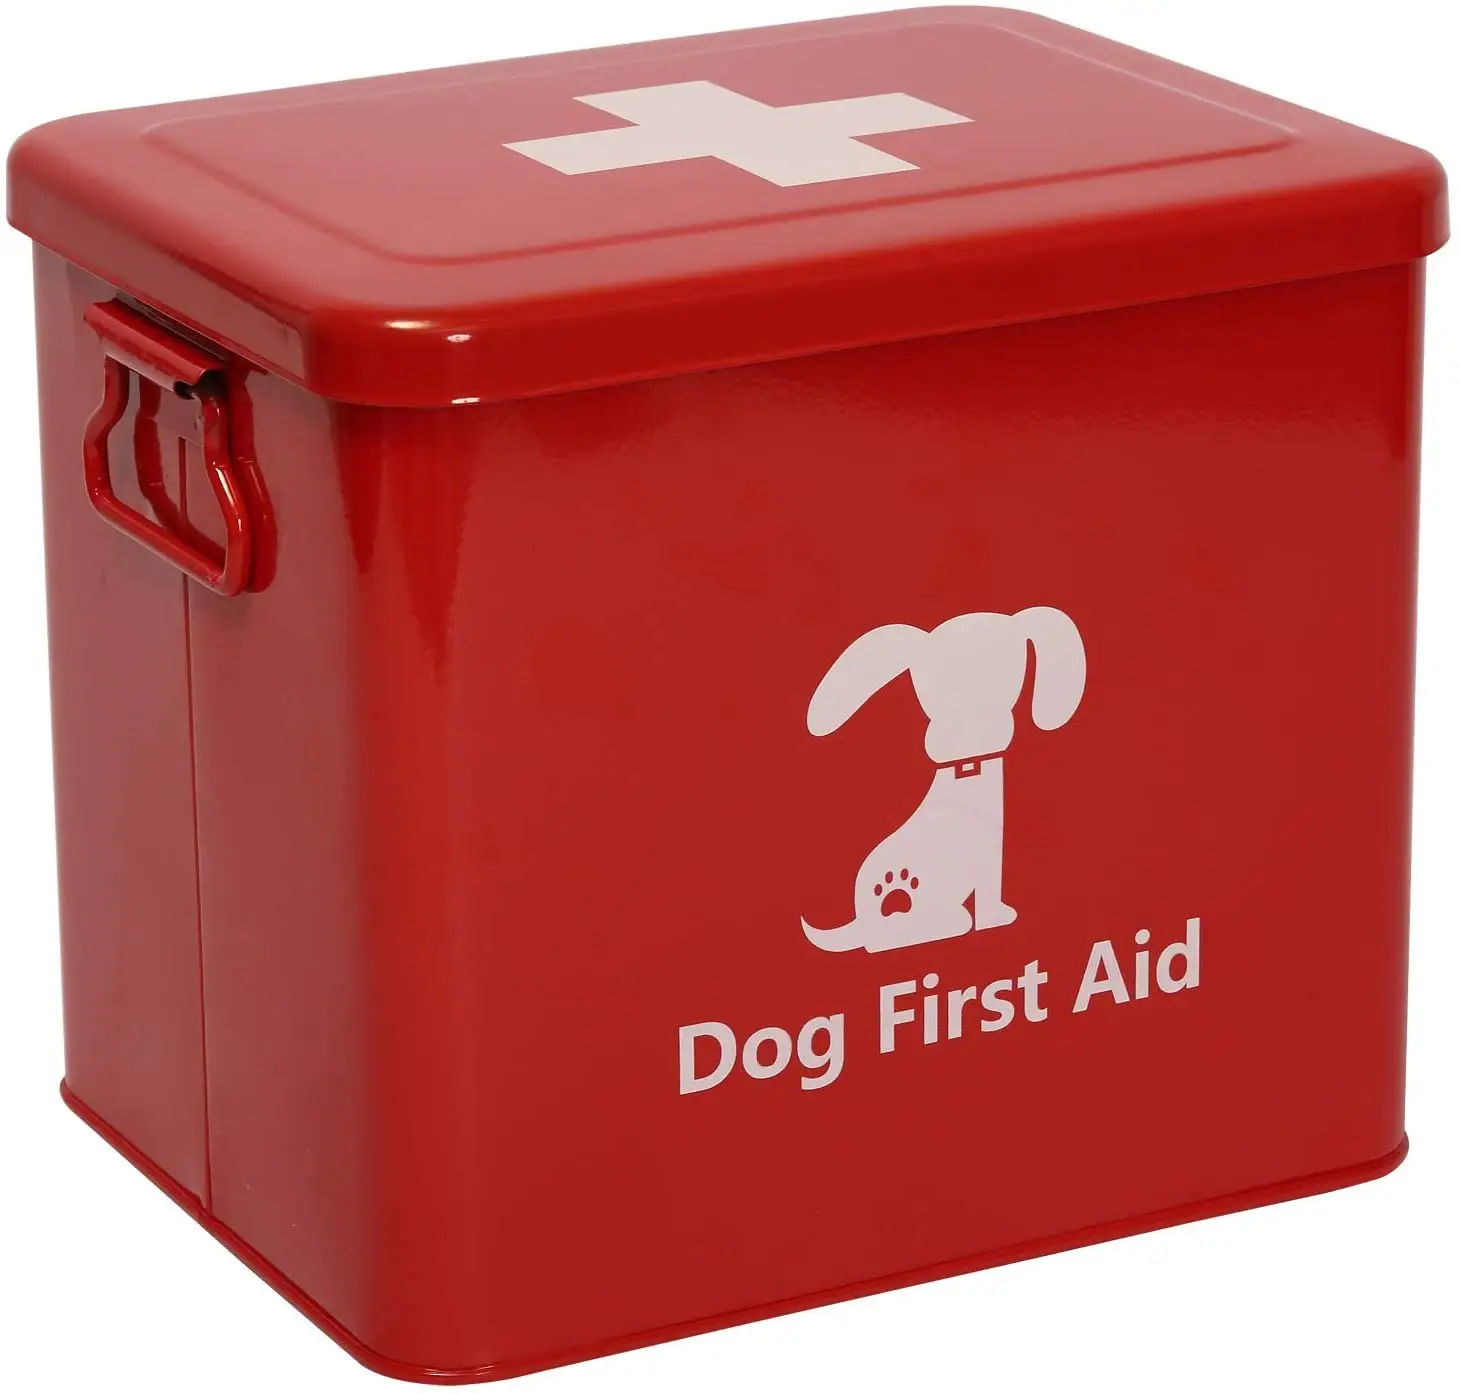 ชุดปฐมพยาบาลโลหะติดผนังสีแดงสำหรับสุนัขสัตว์เลี้ยงดูแล